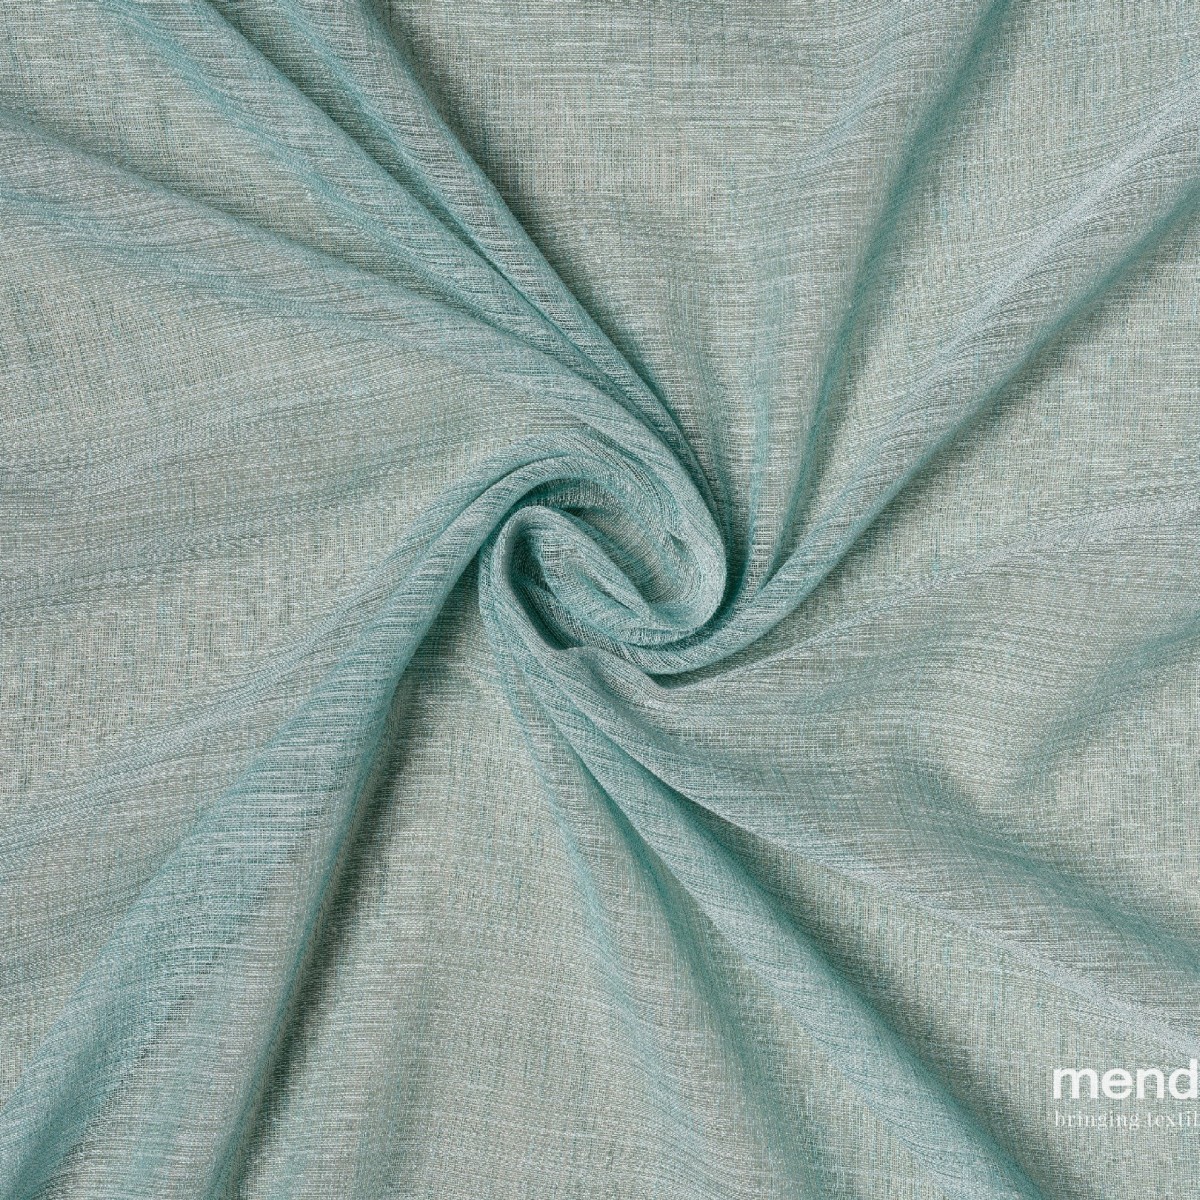 Perdele Mendola fabrics MDF-14-TEATRO. Conține culorile: Gri, Gri Trafic A, Galben, Galben Pastel, Gri, Gri-Verde, Alb, Alb Papirus, Maro, Maro Măsliniu